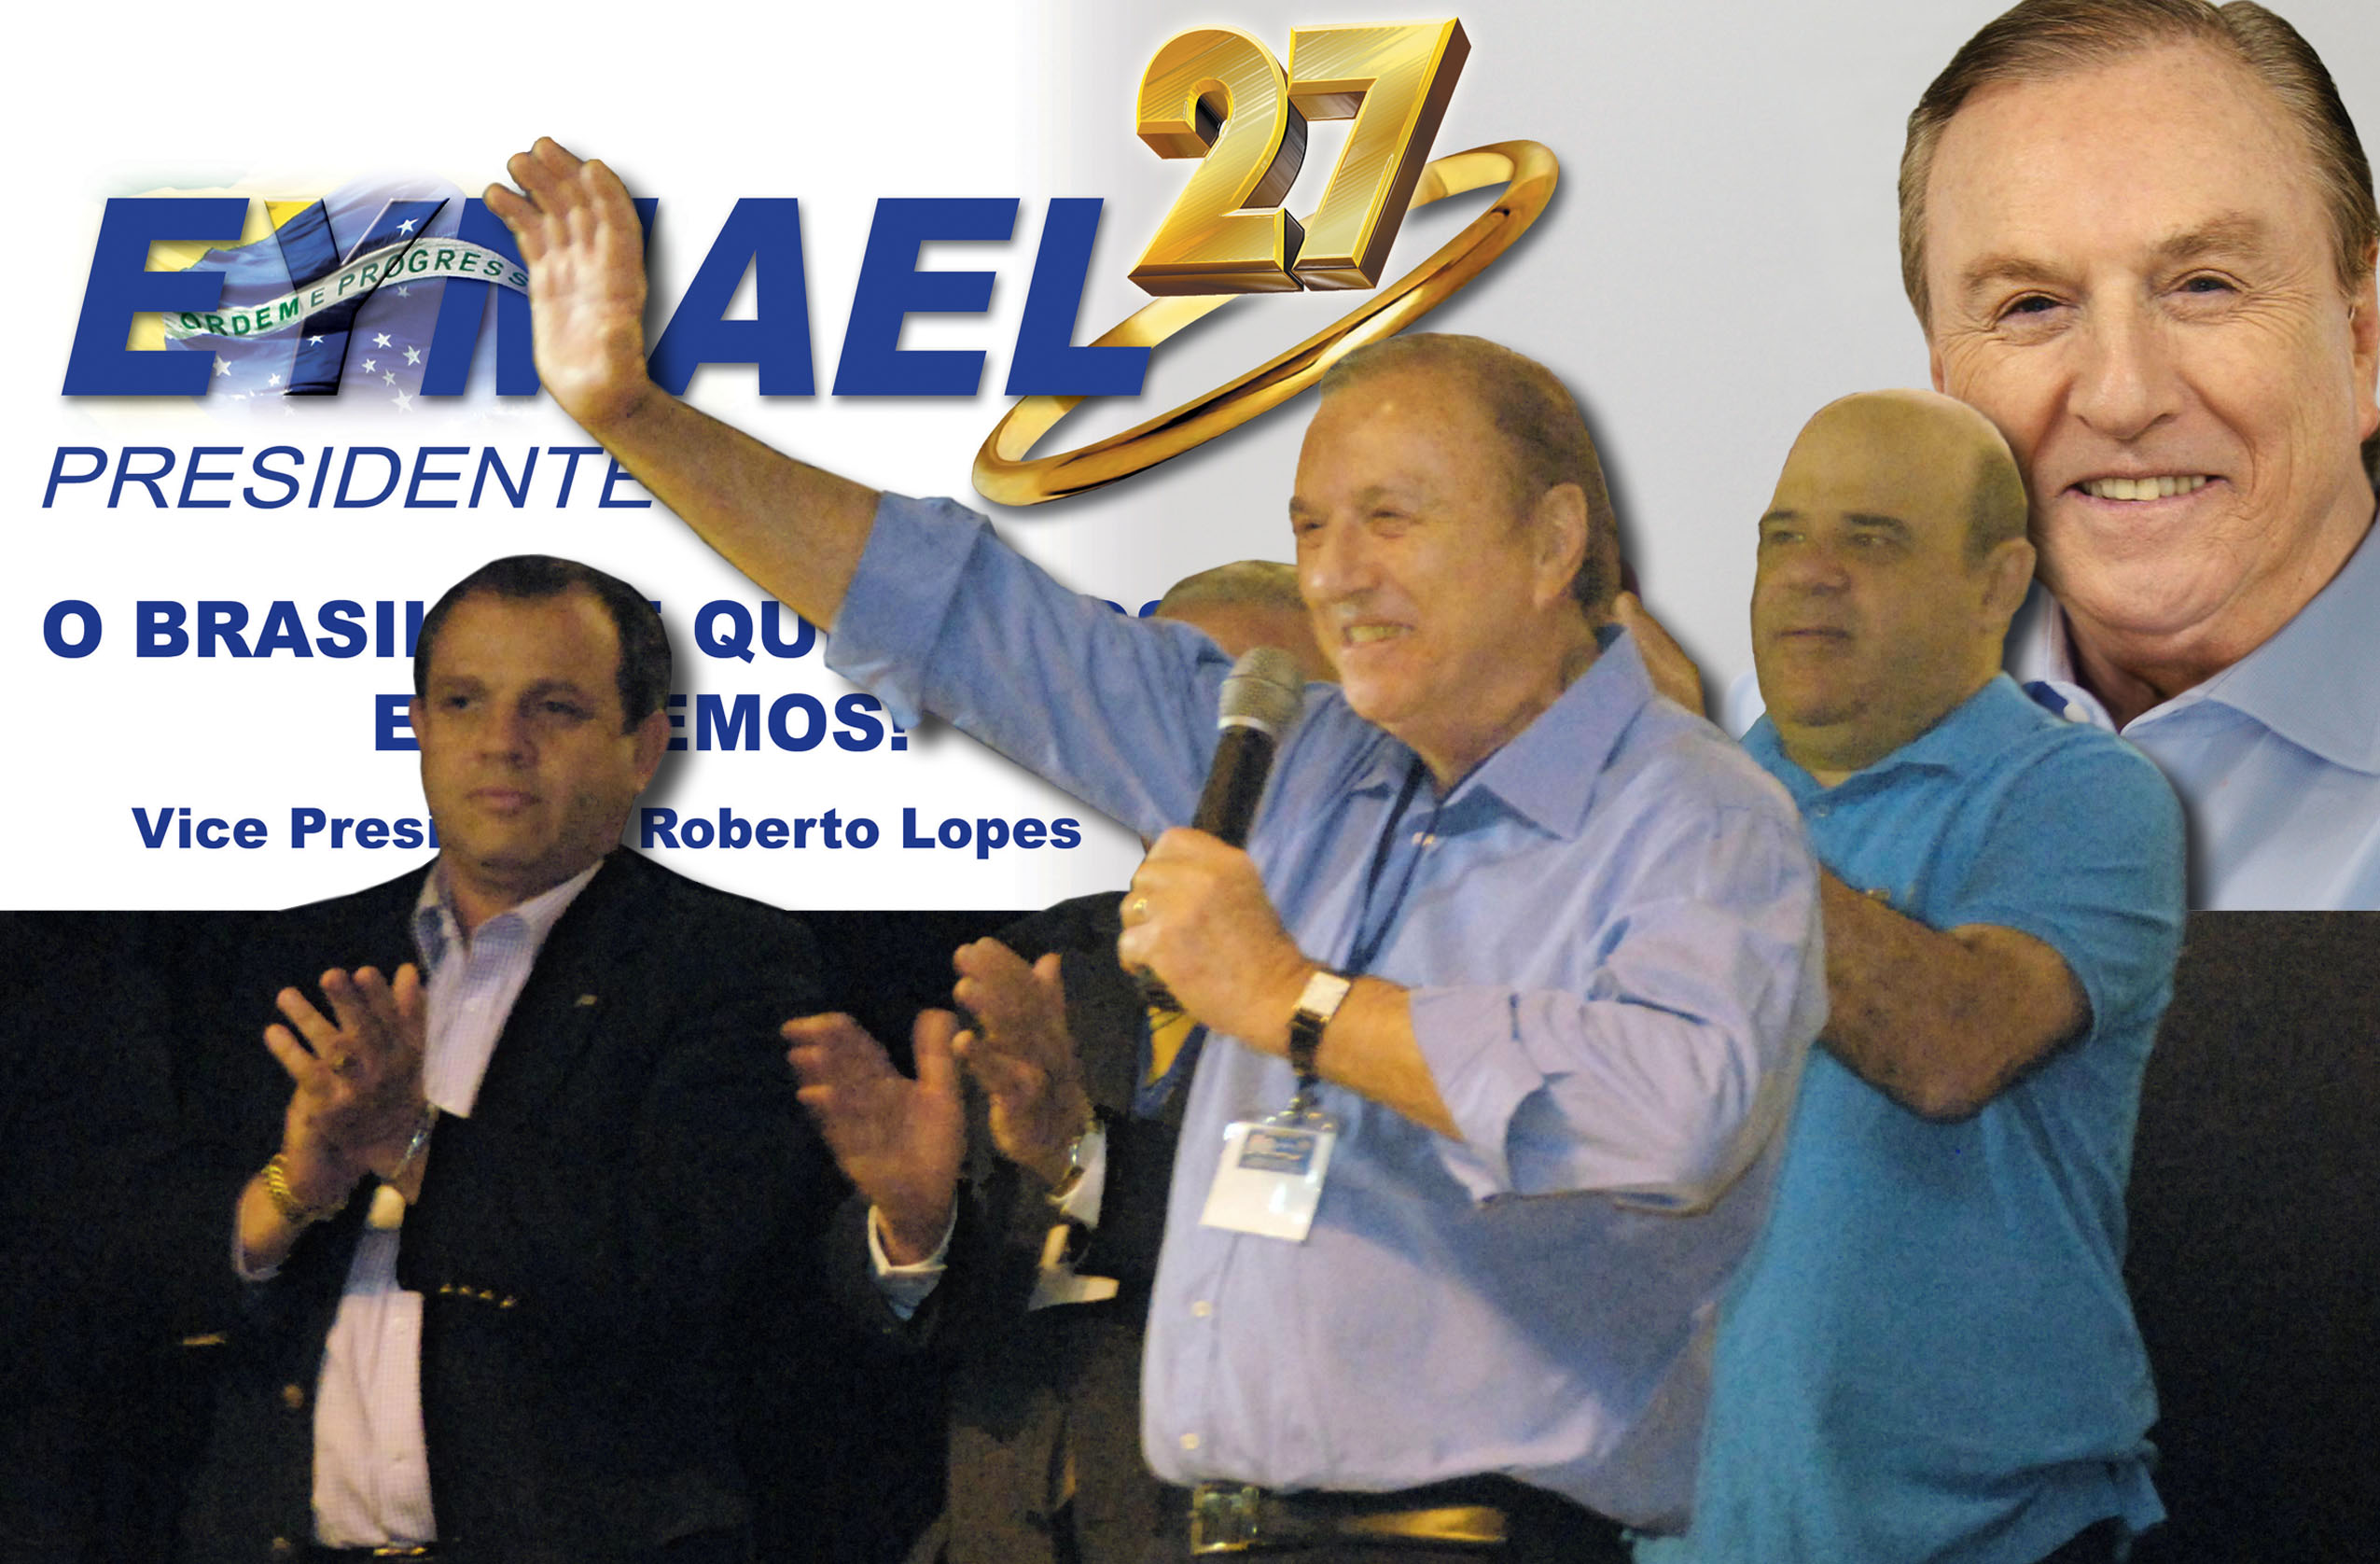  O PSDC aclama: Eymael Presidente. (Foto: Comunicação PSDC)